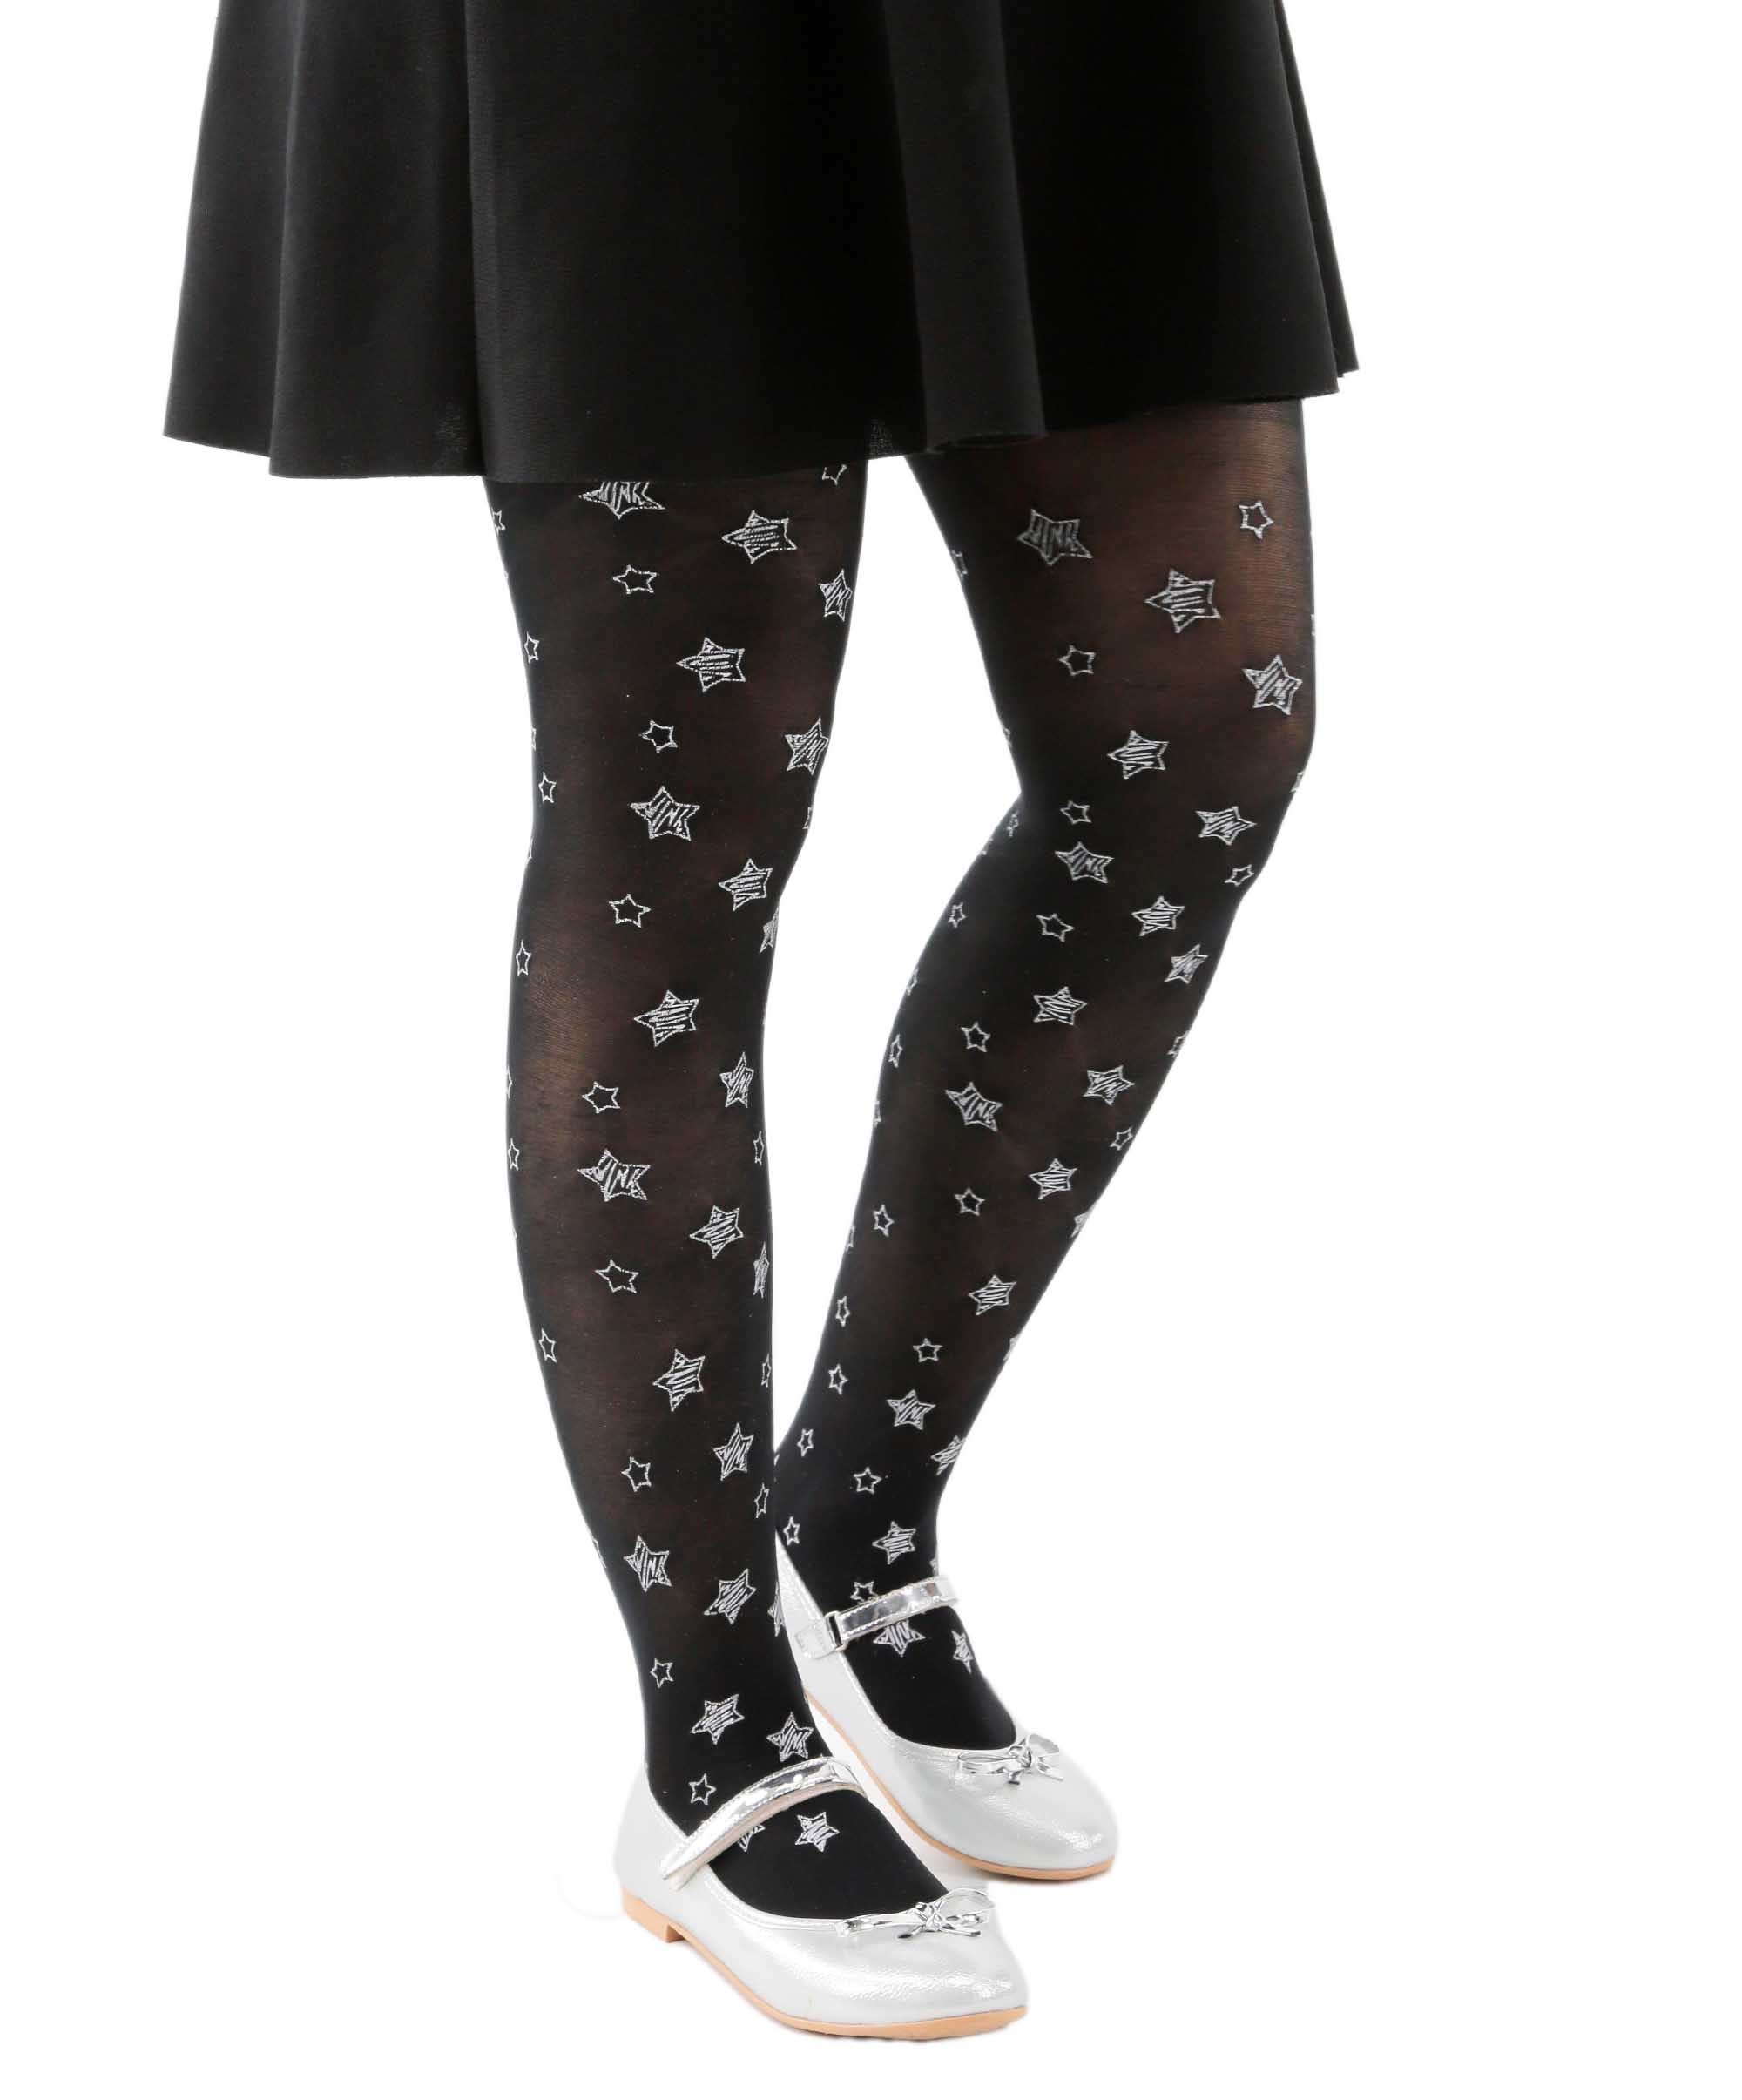 1-12 Yaş Kız Çocuk 50 DEN Yıldız Desenli Külotlu Çorap  - Siyah